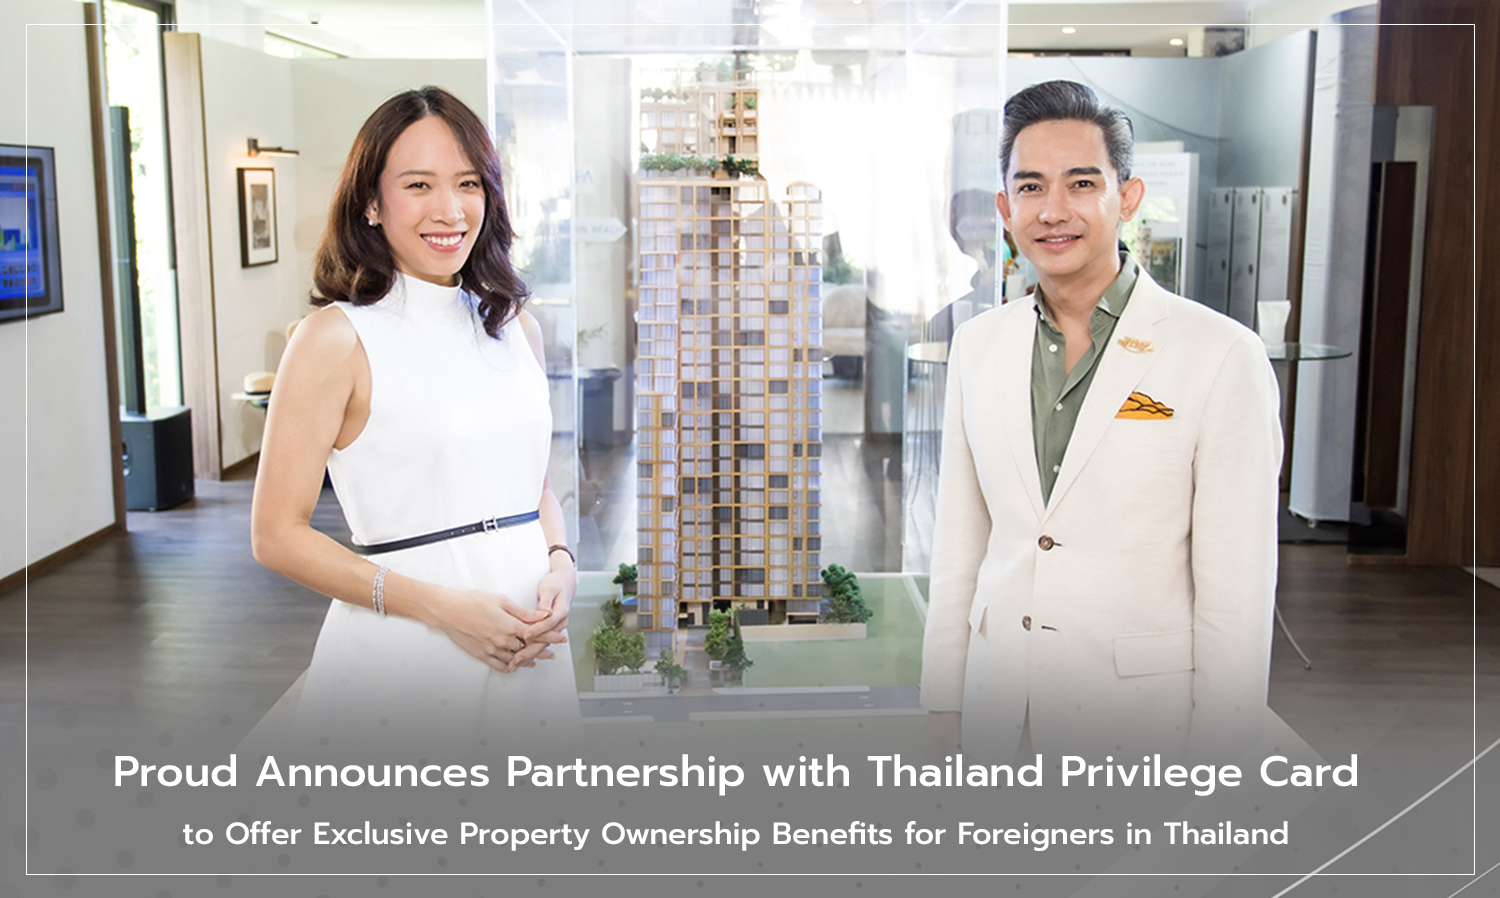 PROUD ประกาศร่วมเป็นพันธมิตรกับ Thailand Privilege Card ส่งมอบเอกสิทธิ์พิเศษในการเป็นเจ้าของที่อยู่อาศัยในไทย